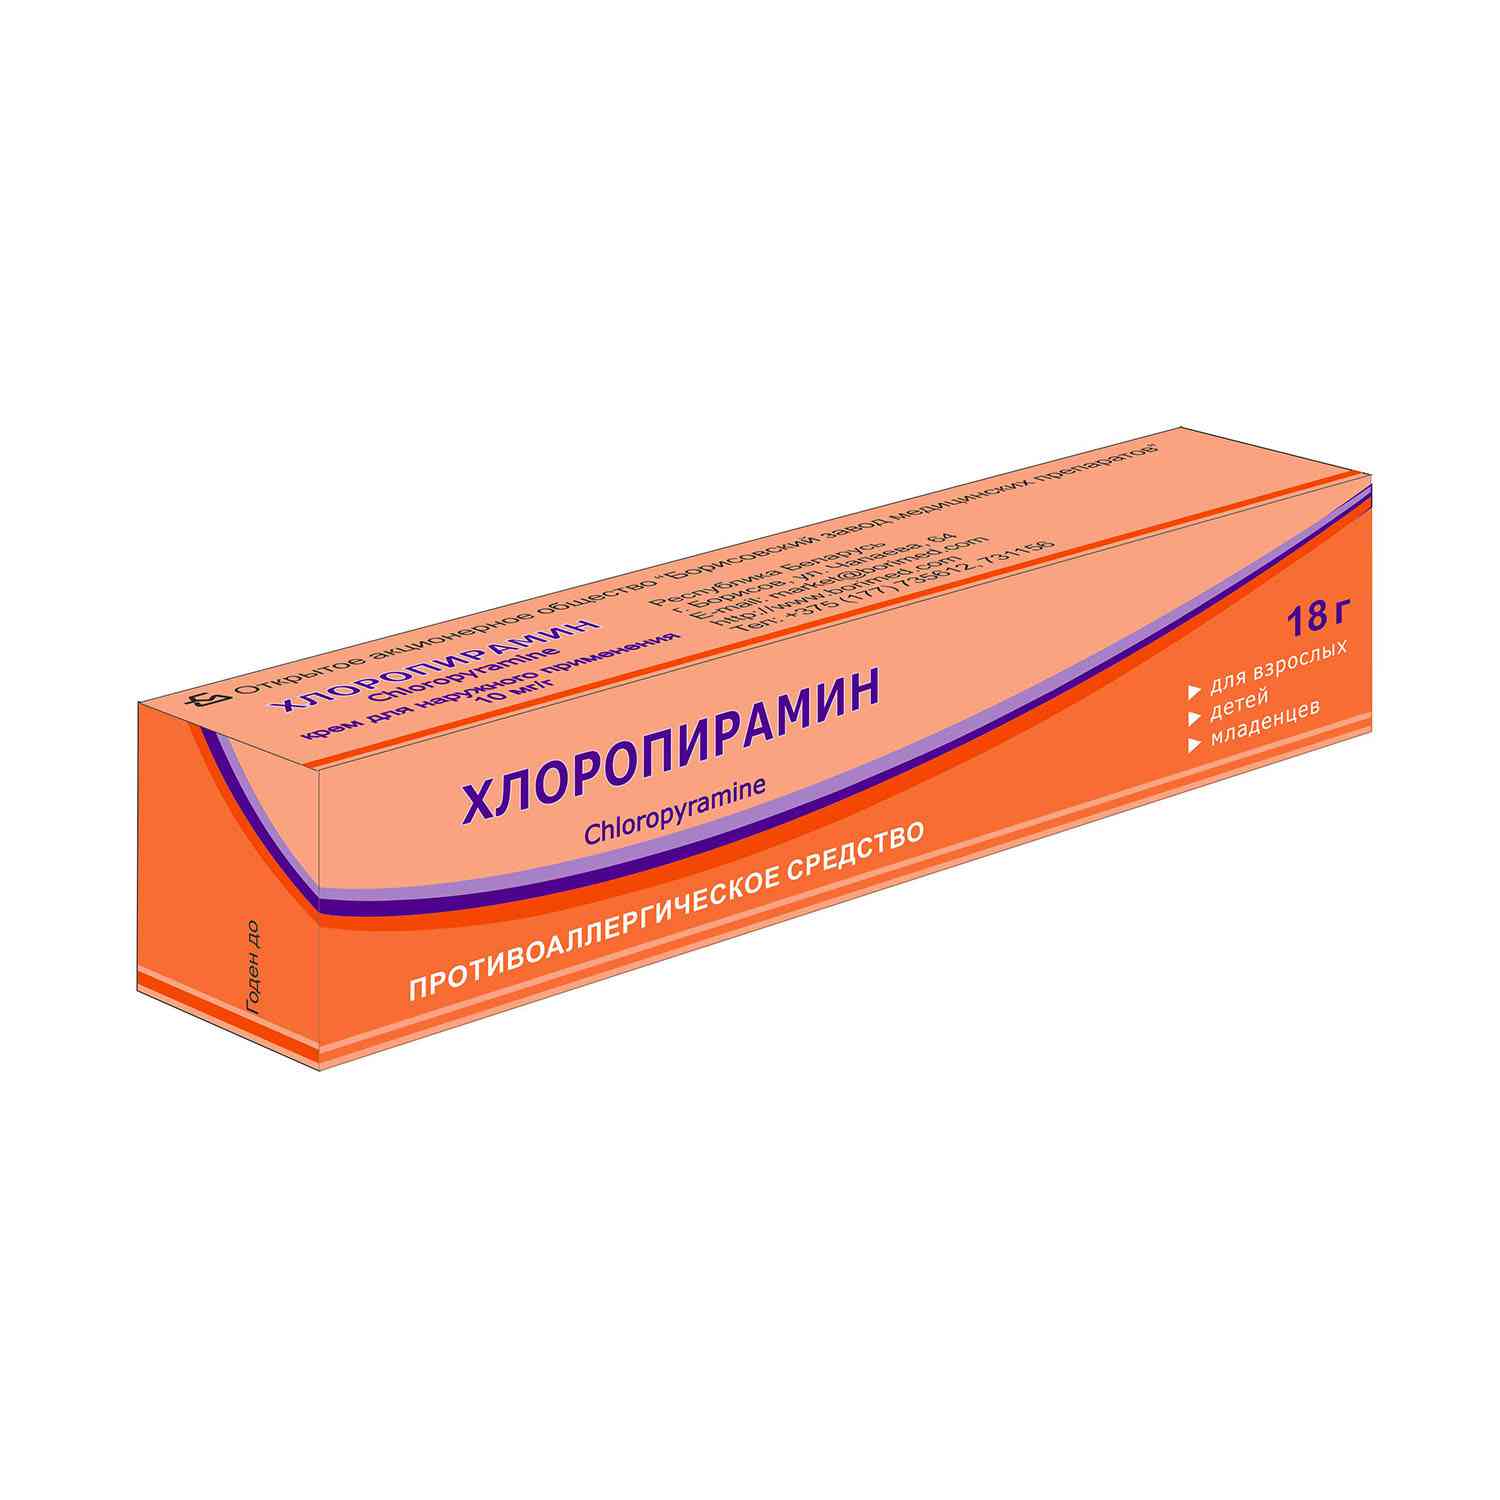 5019 ГАЙМОРИН - Comb drug